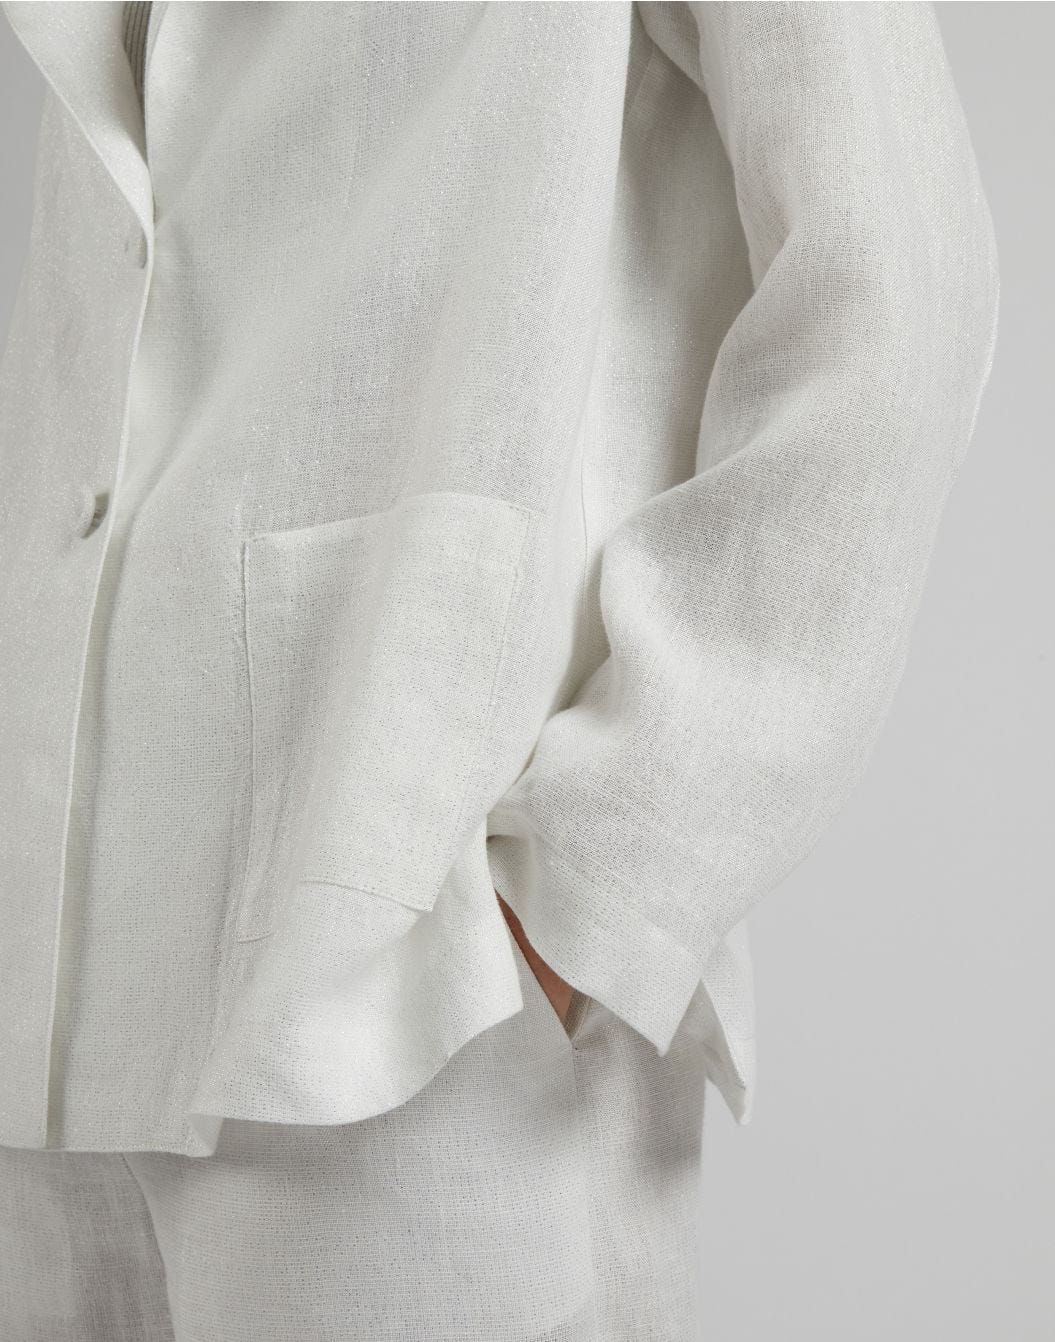 Einreihige Jacke aus weißem und silbernem Lurex-Leinen